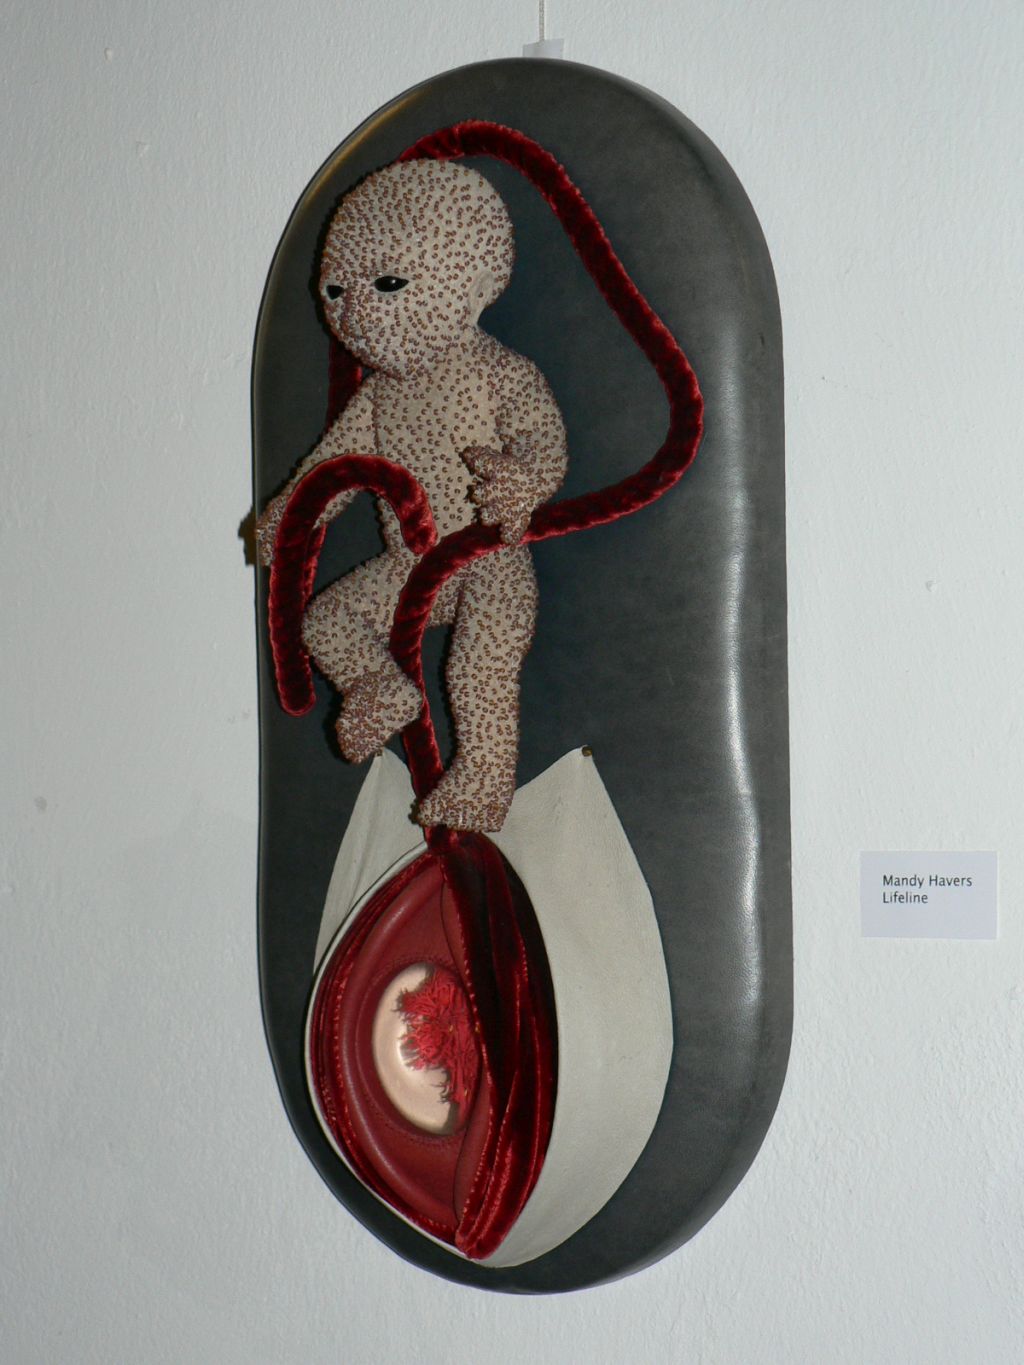 'Lifeline' von Mandy Havers, Embryoartiges Objekt